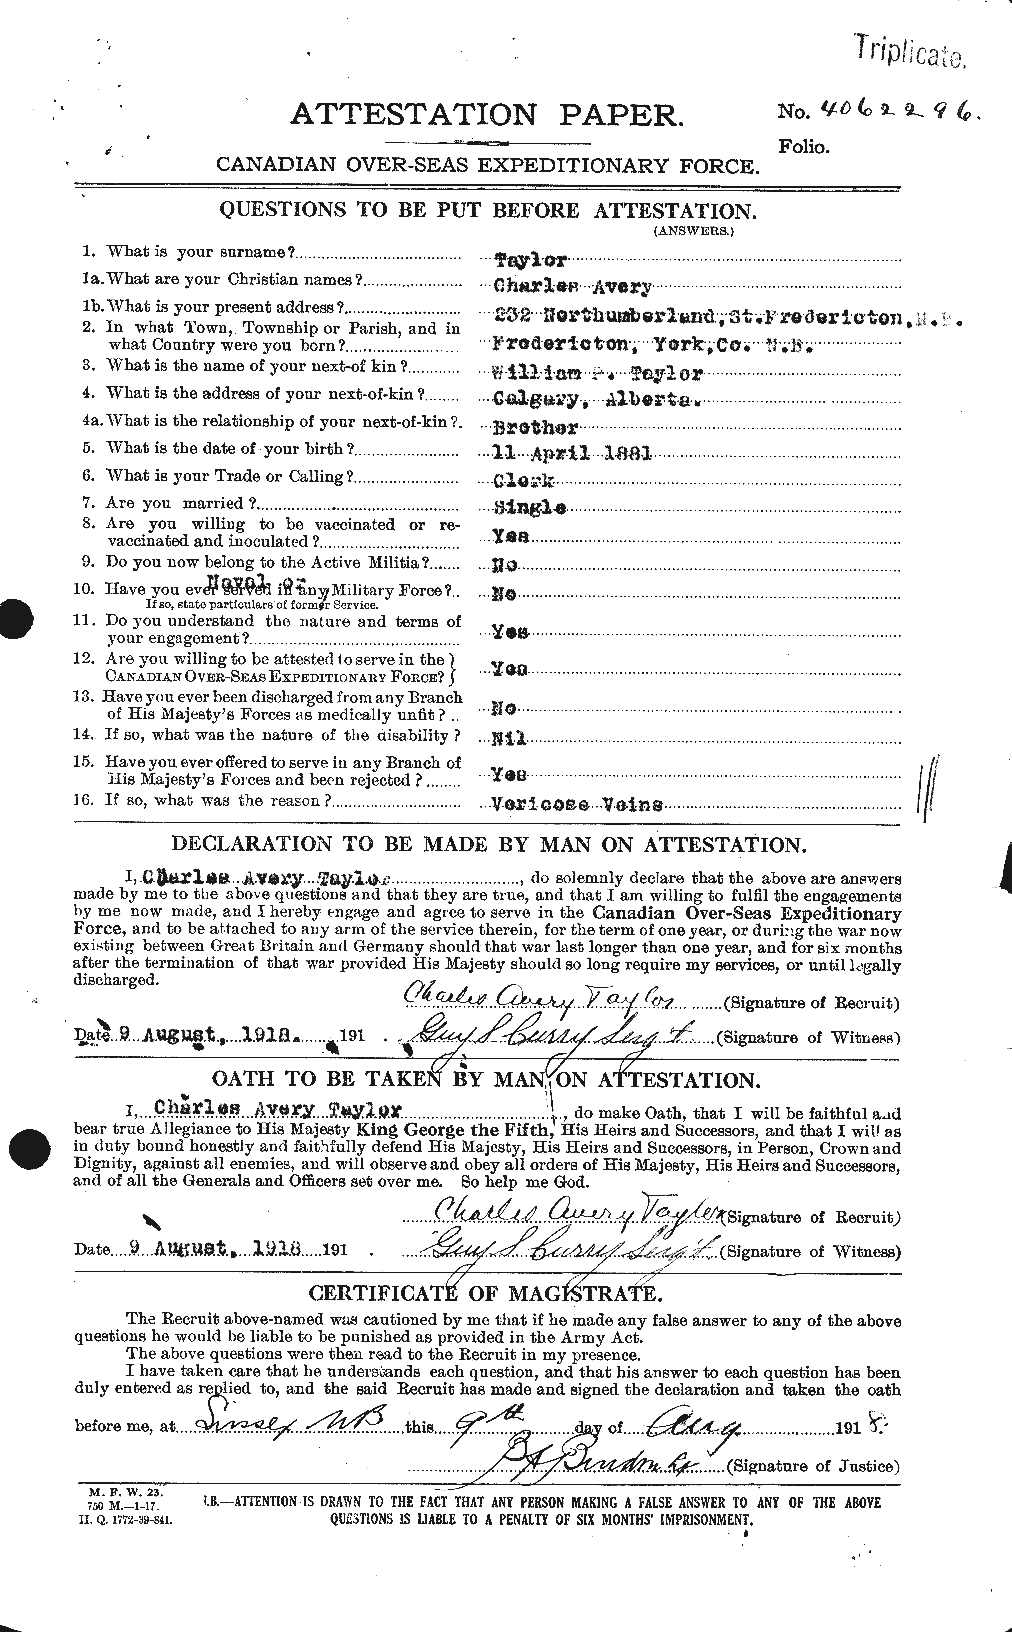 Dossiers du Personnel de la Première Guerre mondiale - CEC 626829a